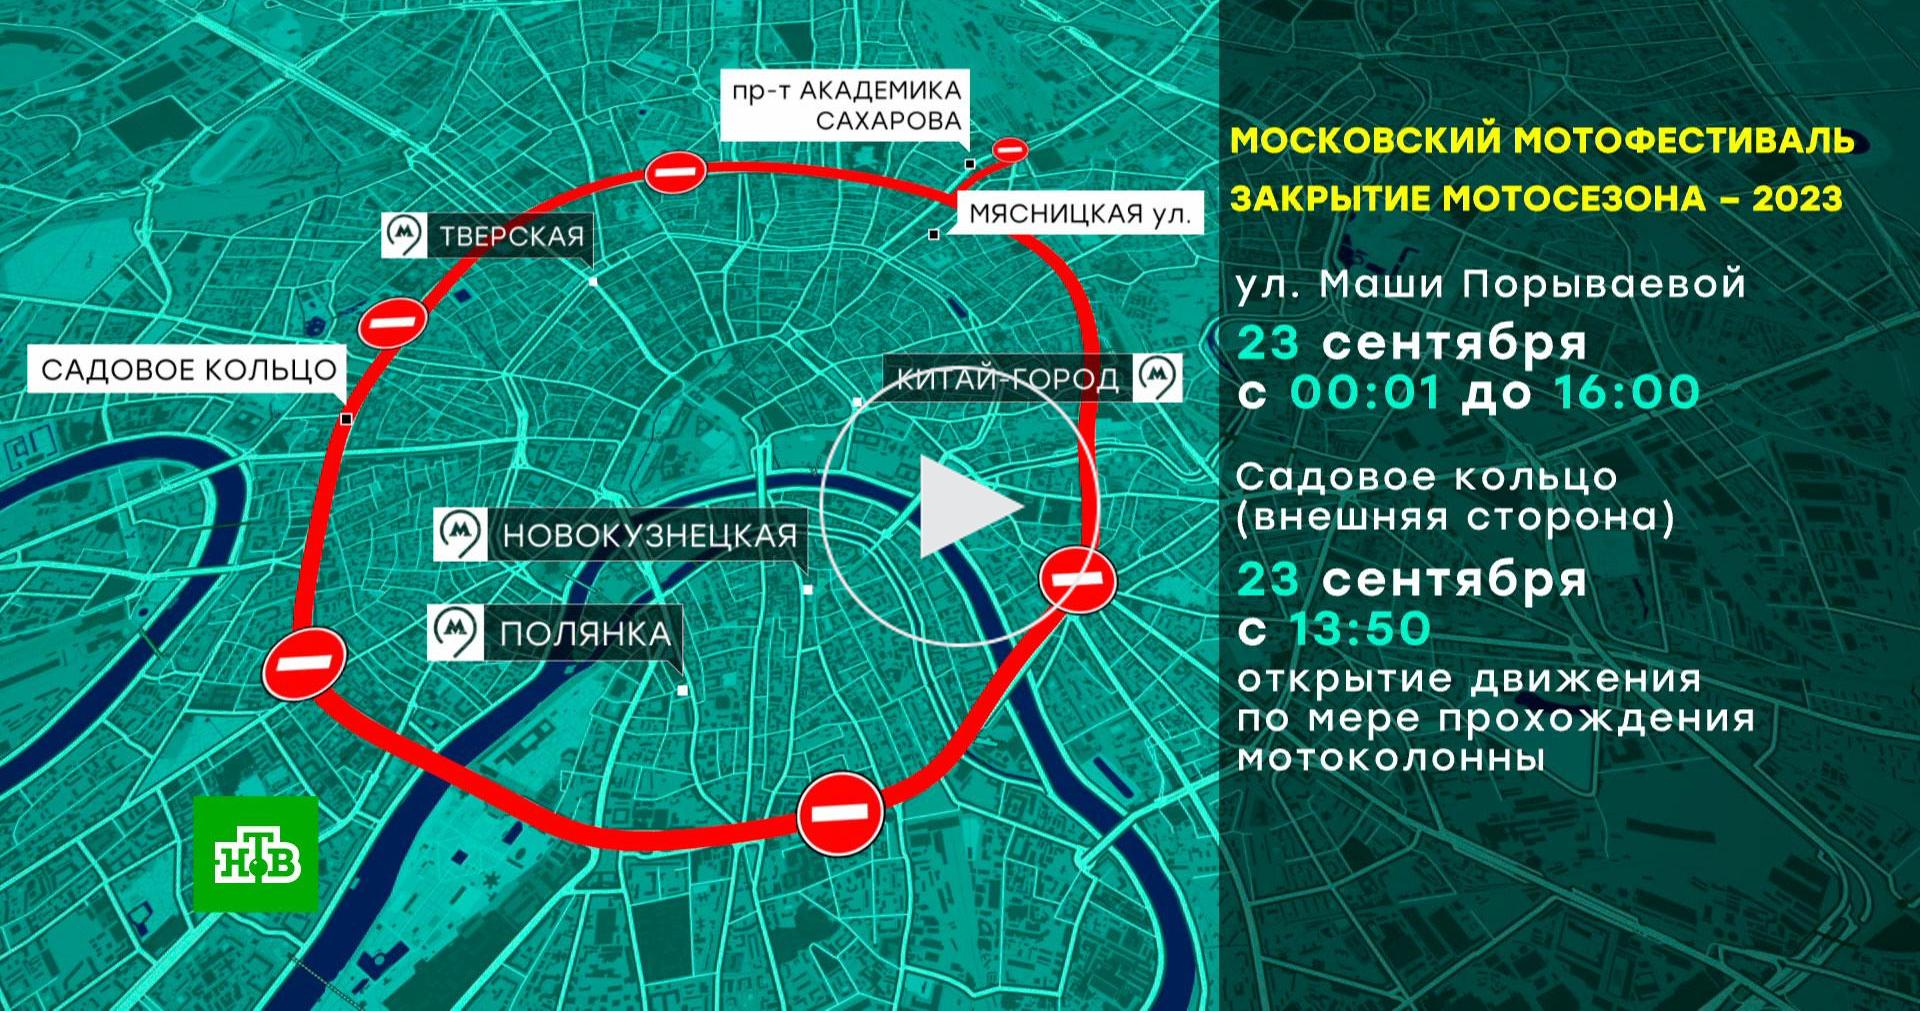 Перекрытие дорог в Москве